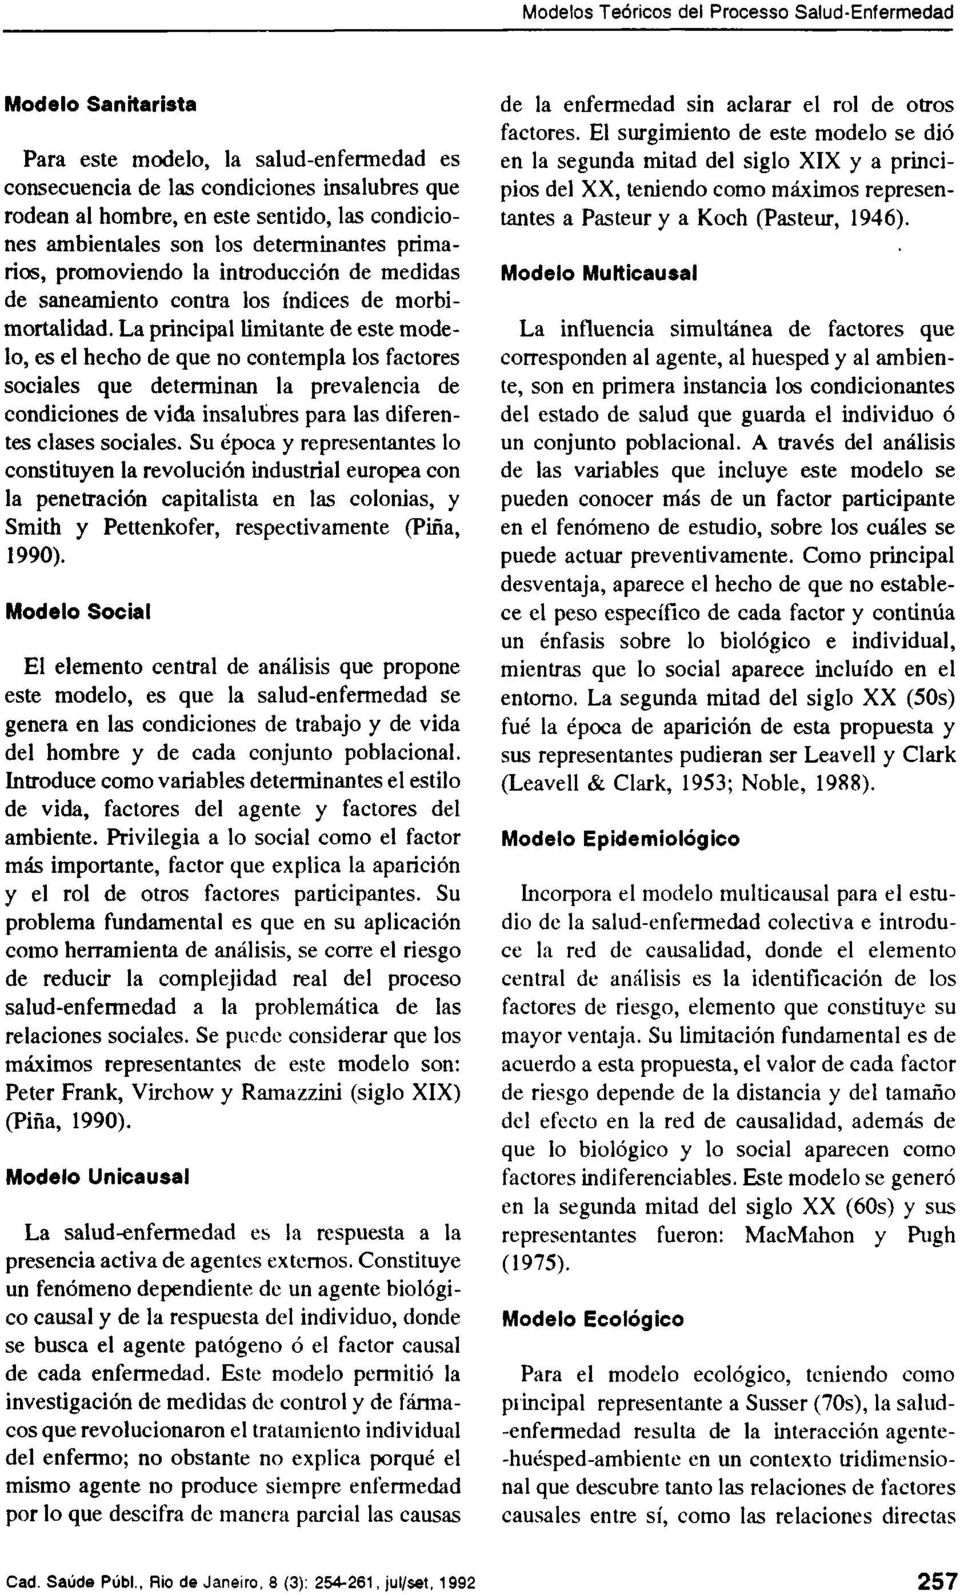 Análisis y Reflexión sobre Modelos Teóricos del Proceso Salud-Enfermedad -  PDF Descargar libre